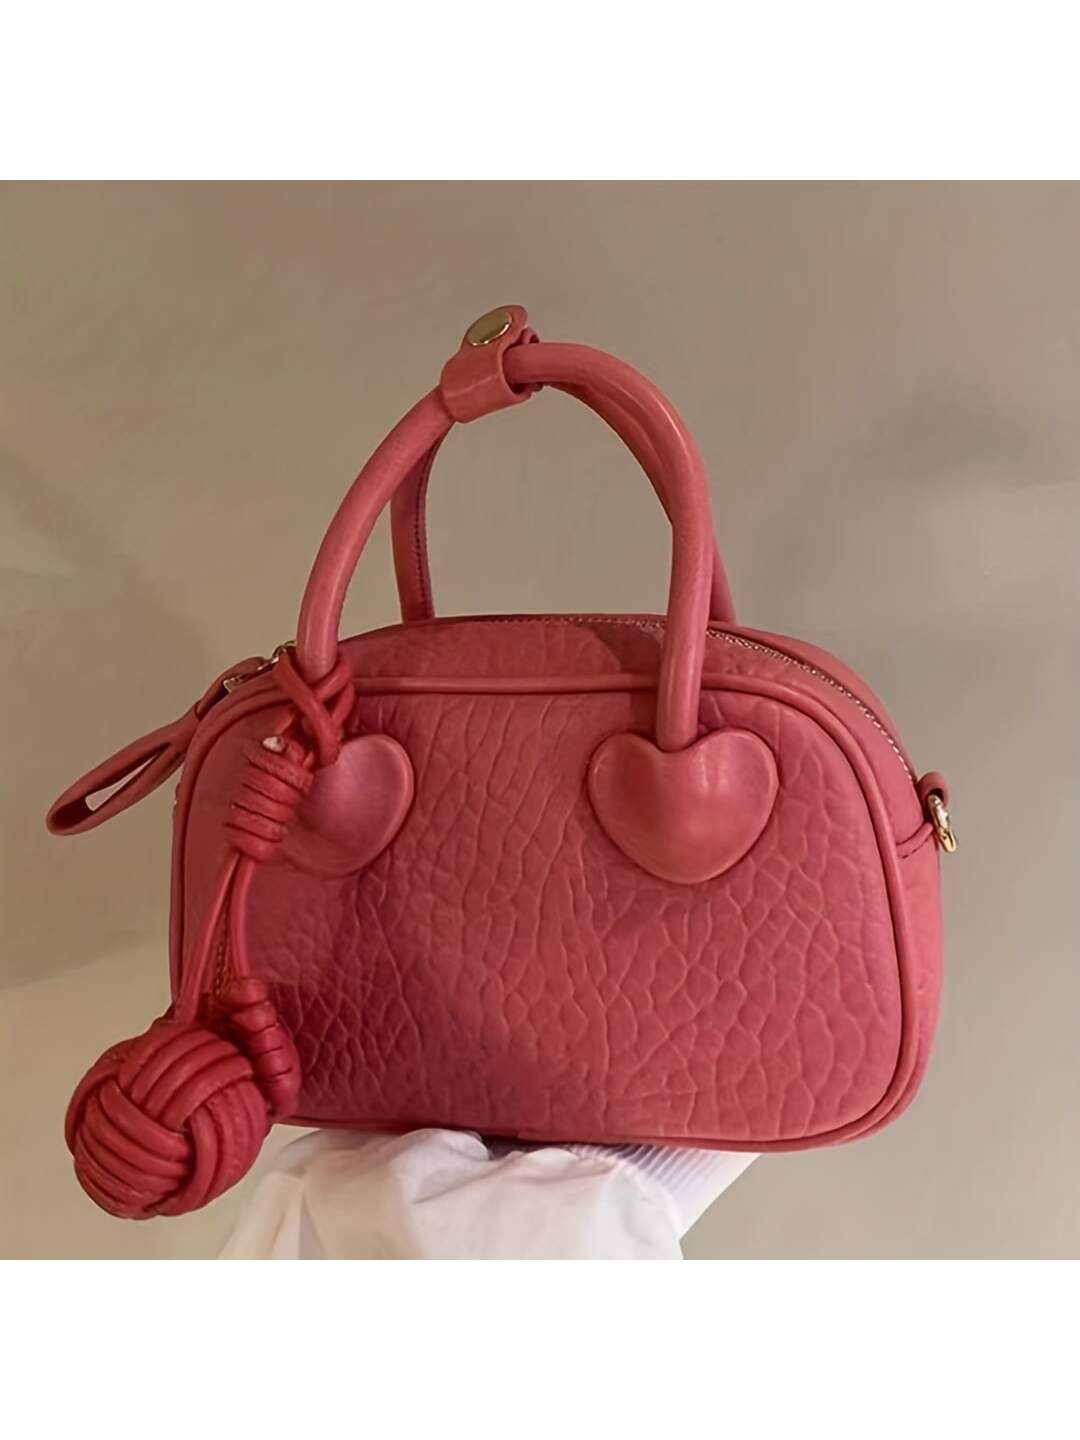 Barabum Miniature Fashionable Lychee-patterned Pu Handbag With Pendant